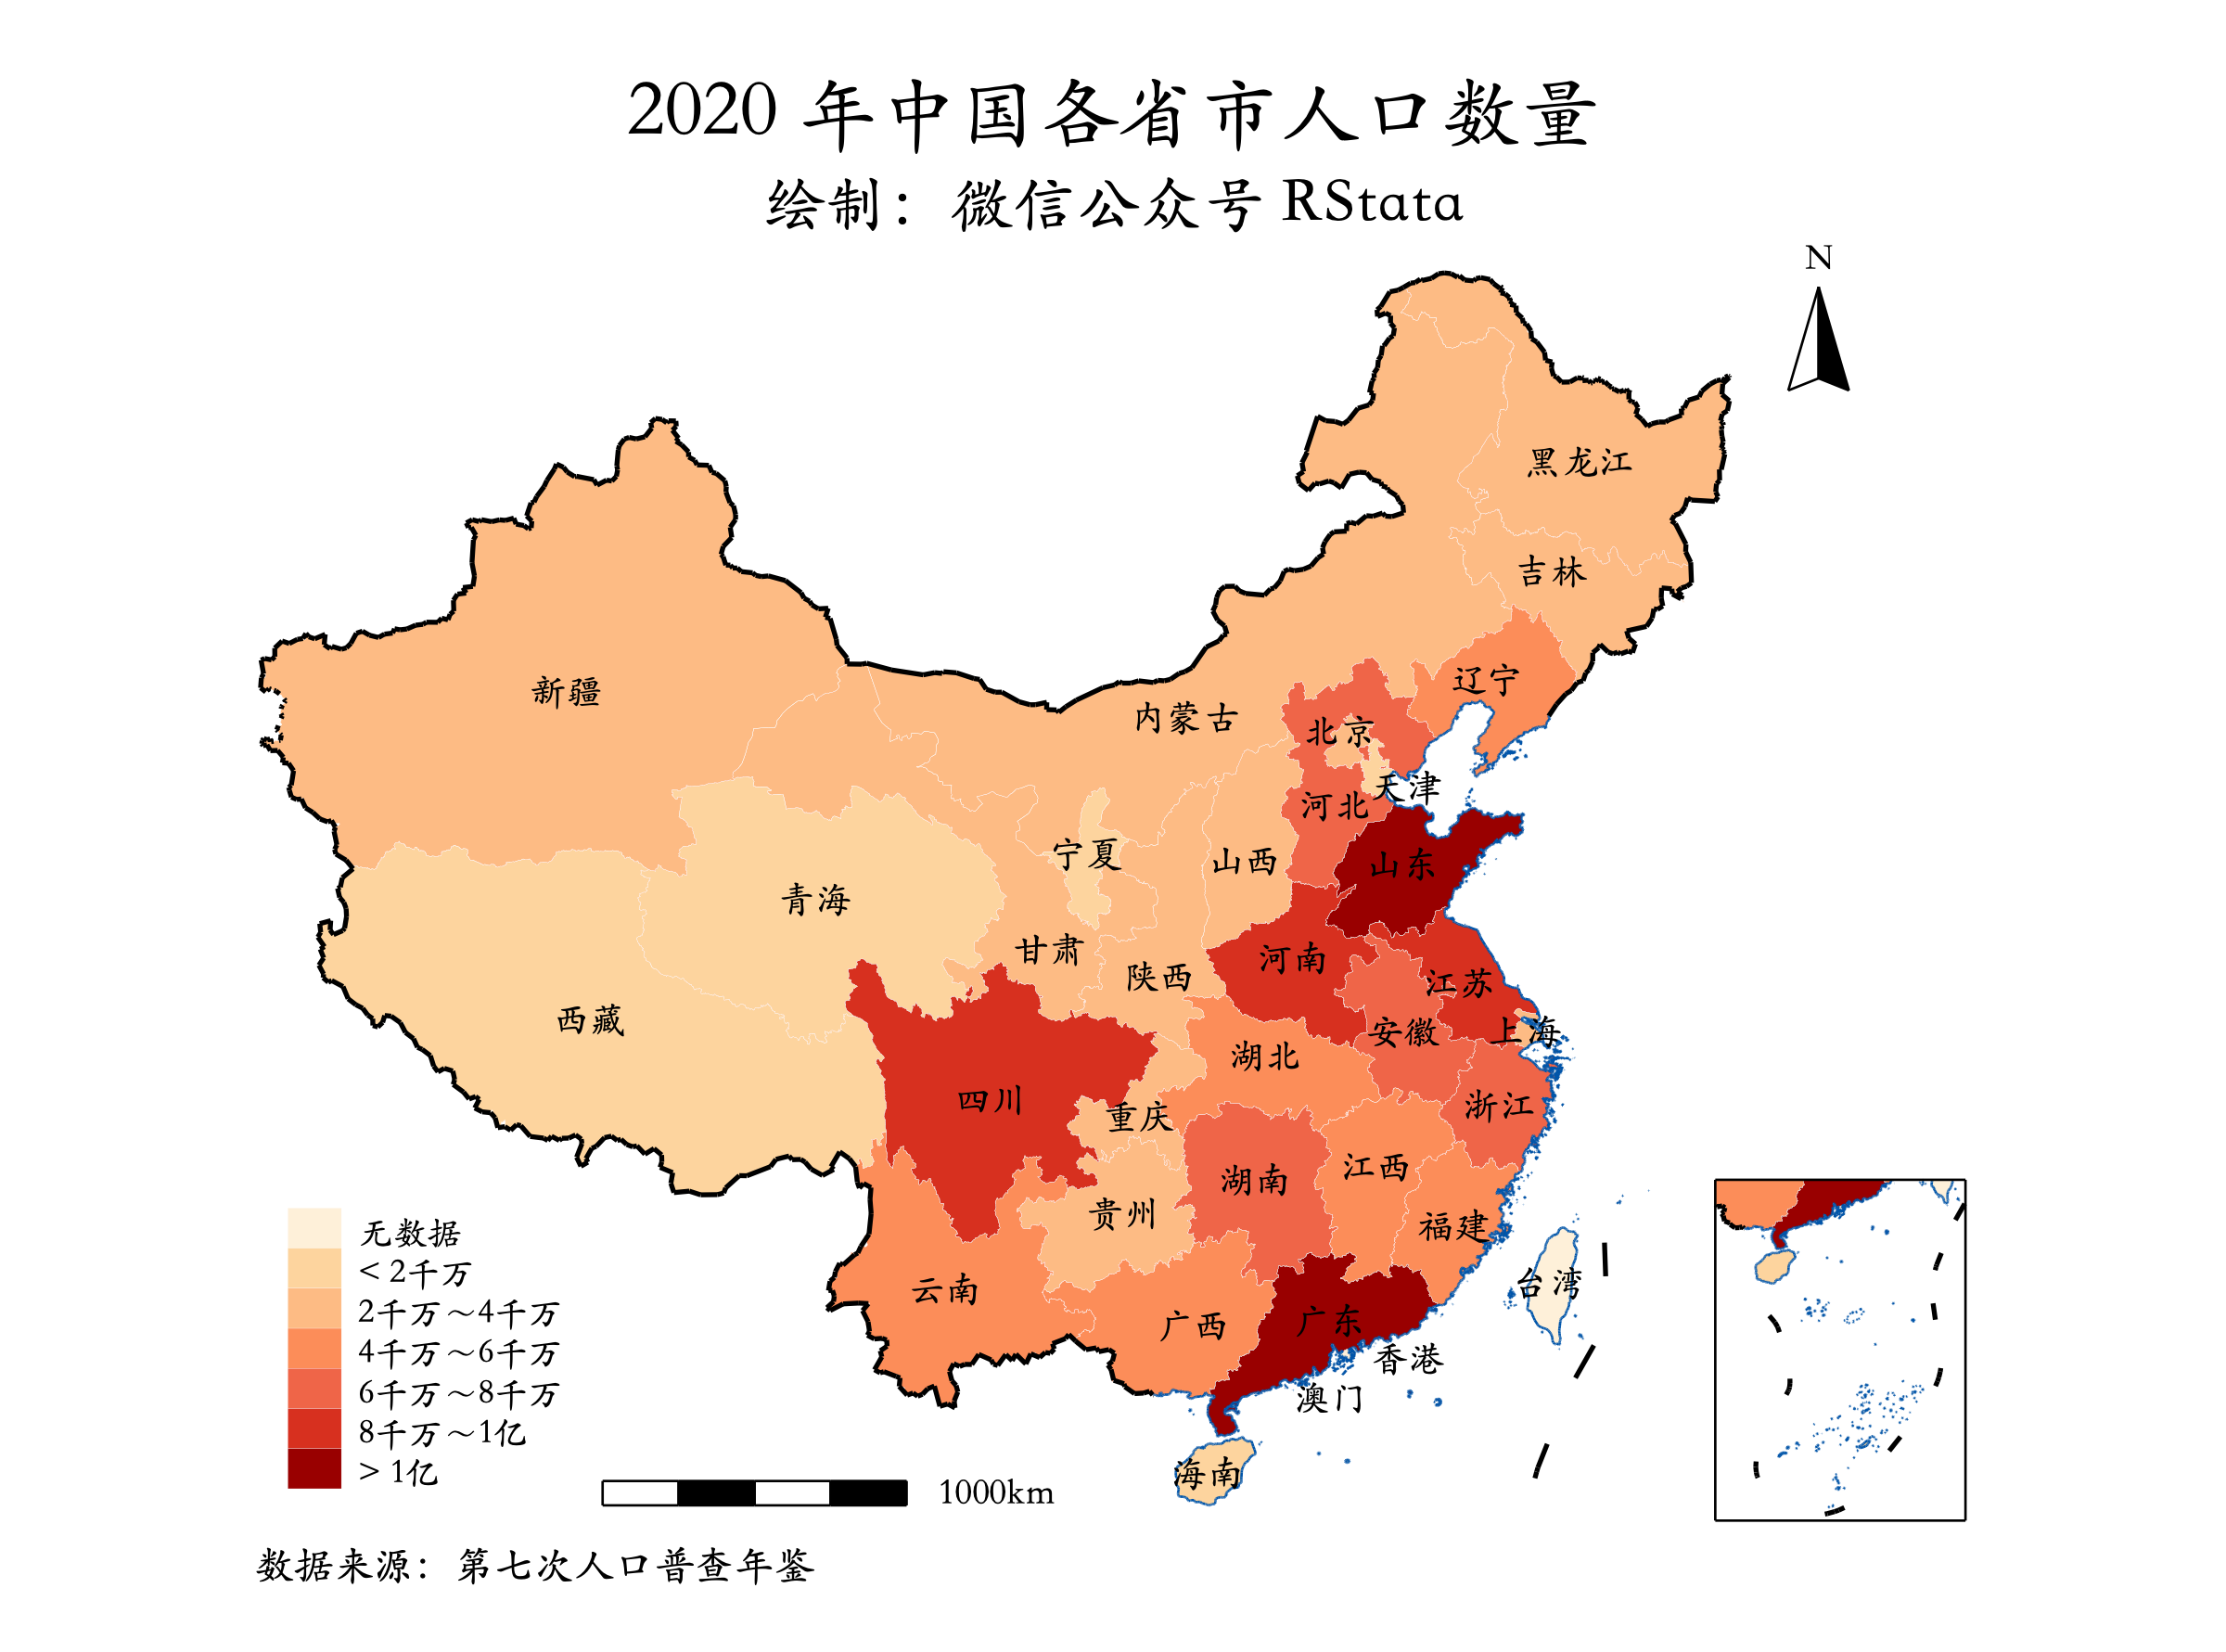 2020 年中国各省市人口